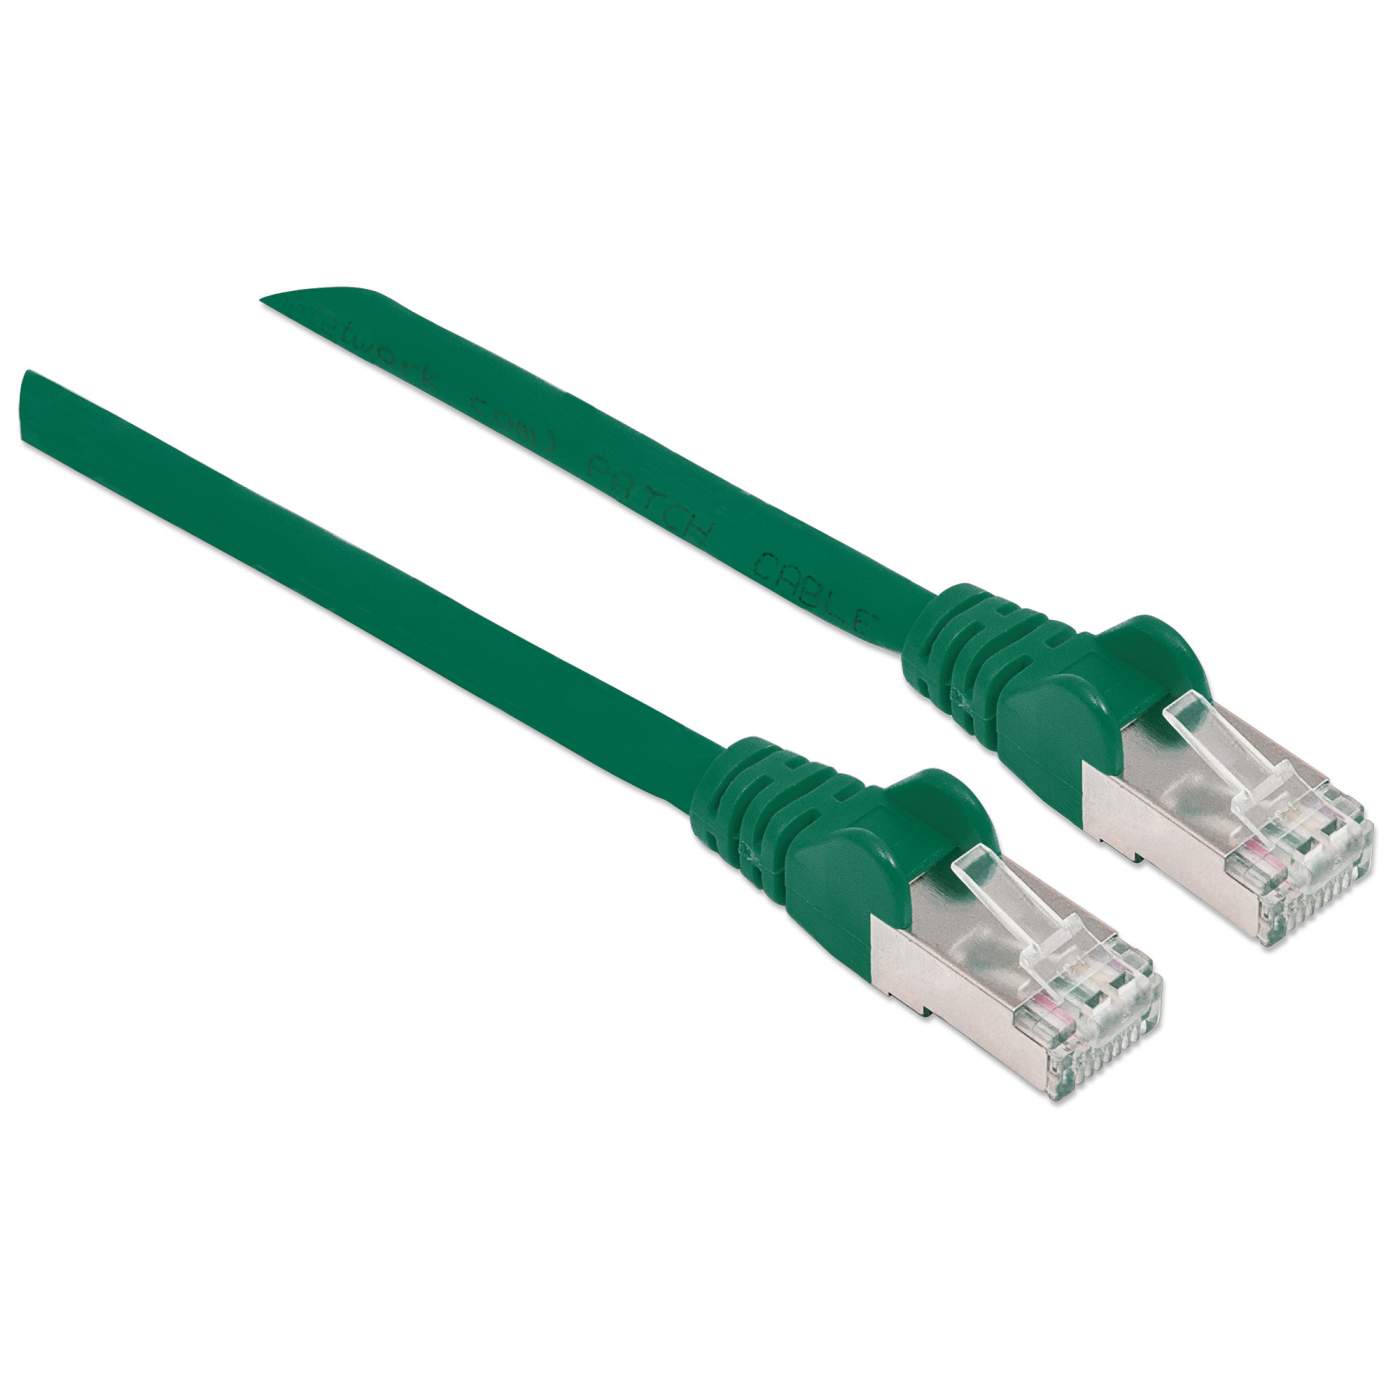 Netzwerkkabel mit Cat6a-Stecker und Cat7-Rohkabel, S/FTP Image 2